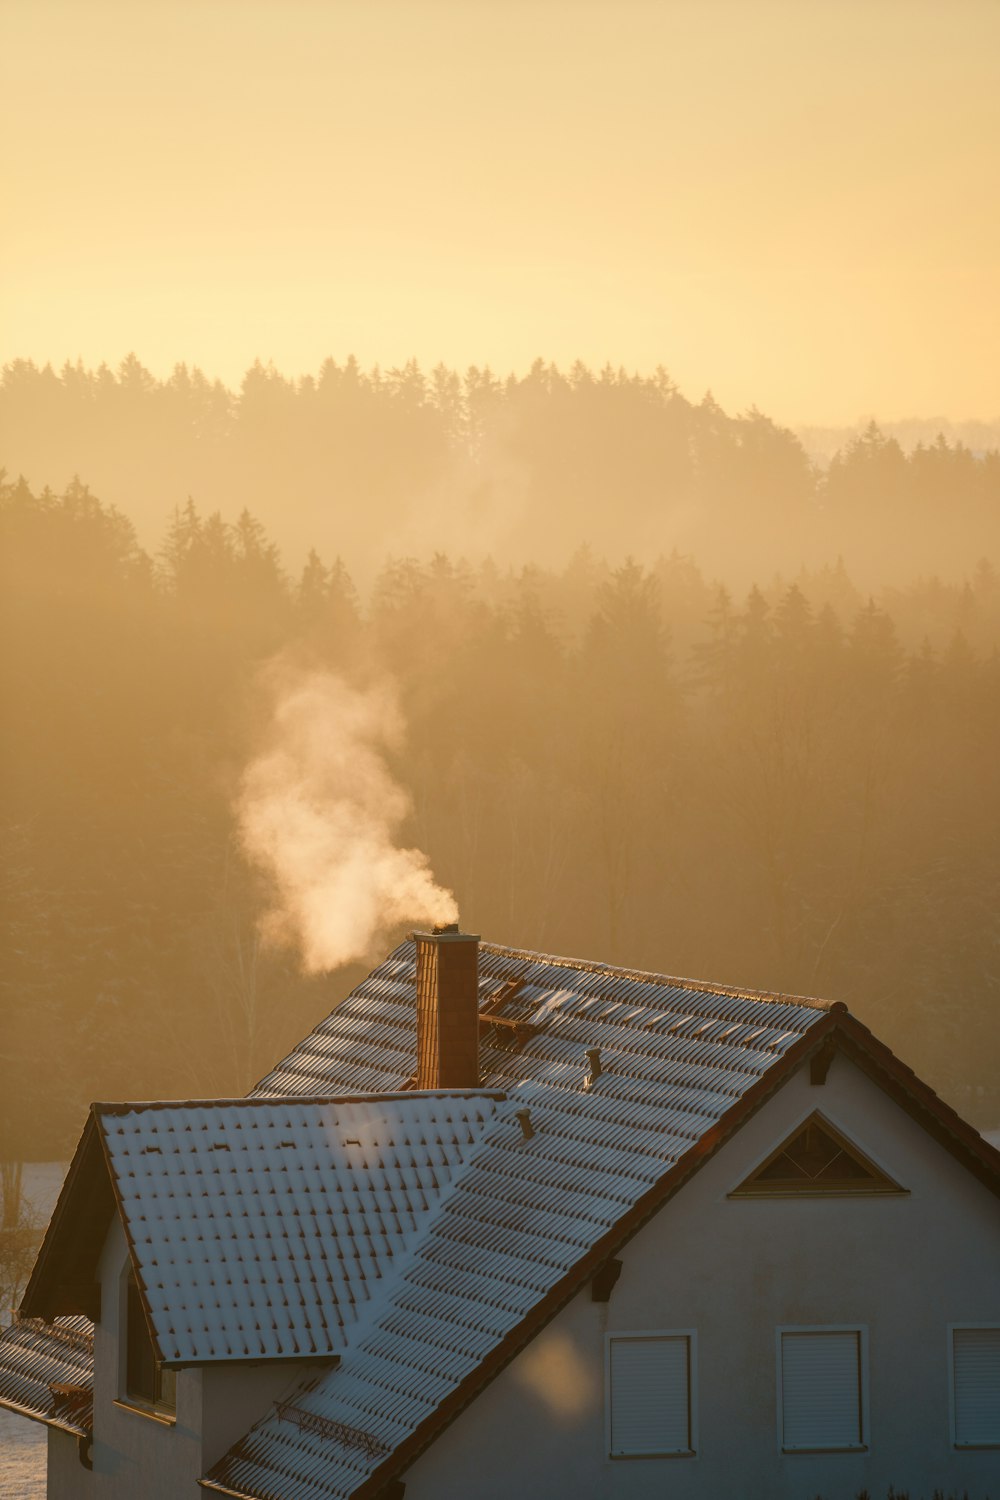 fumée sortant d’une cheminée au-dessus d’une maison